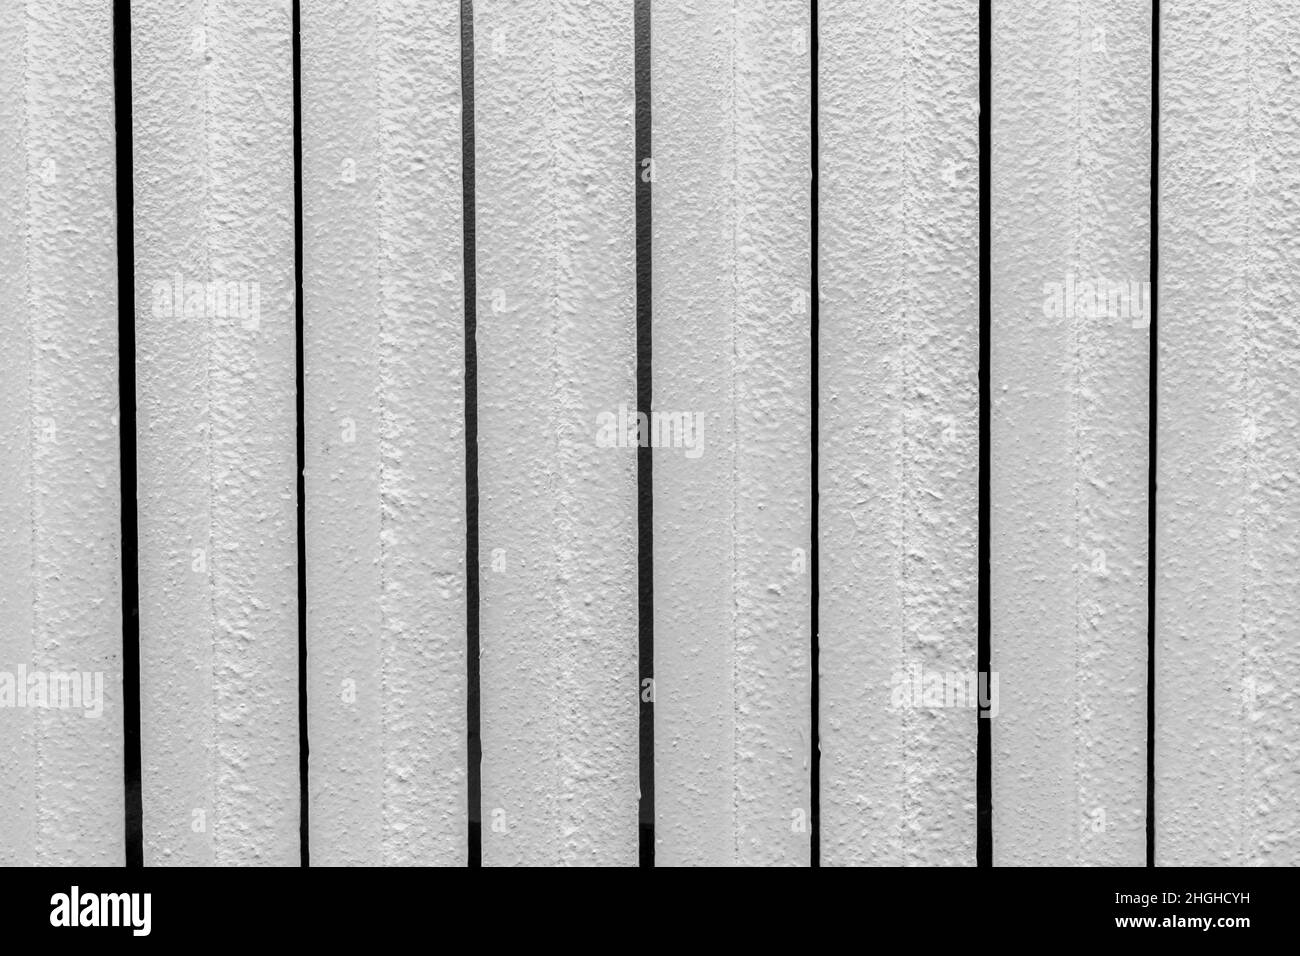 Heizkörper Metallbatterie Temperatur warme Heizung heißer Hintergrund, Nahaufnahme. Stockfoto